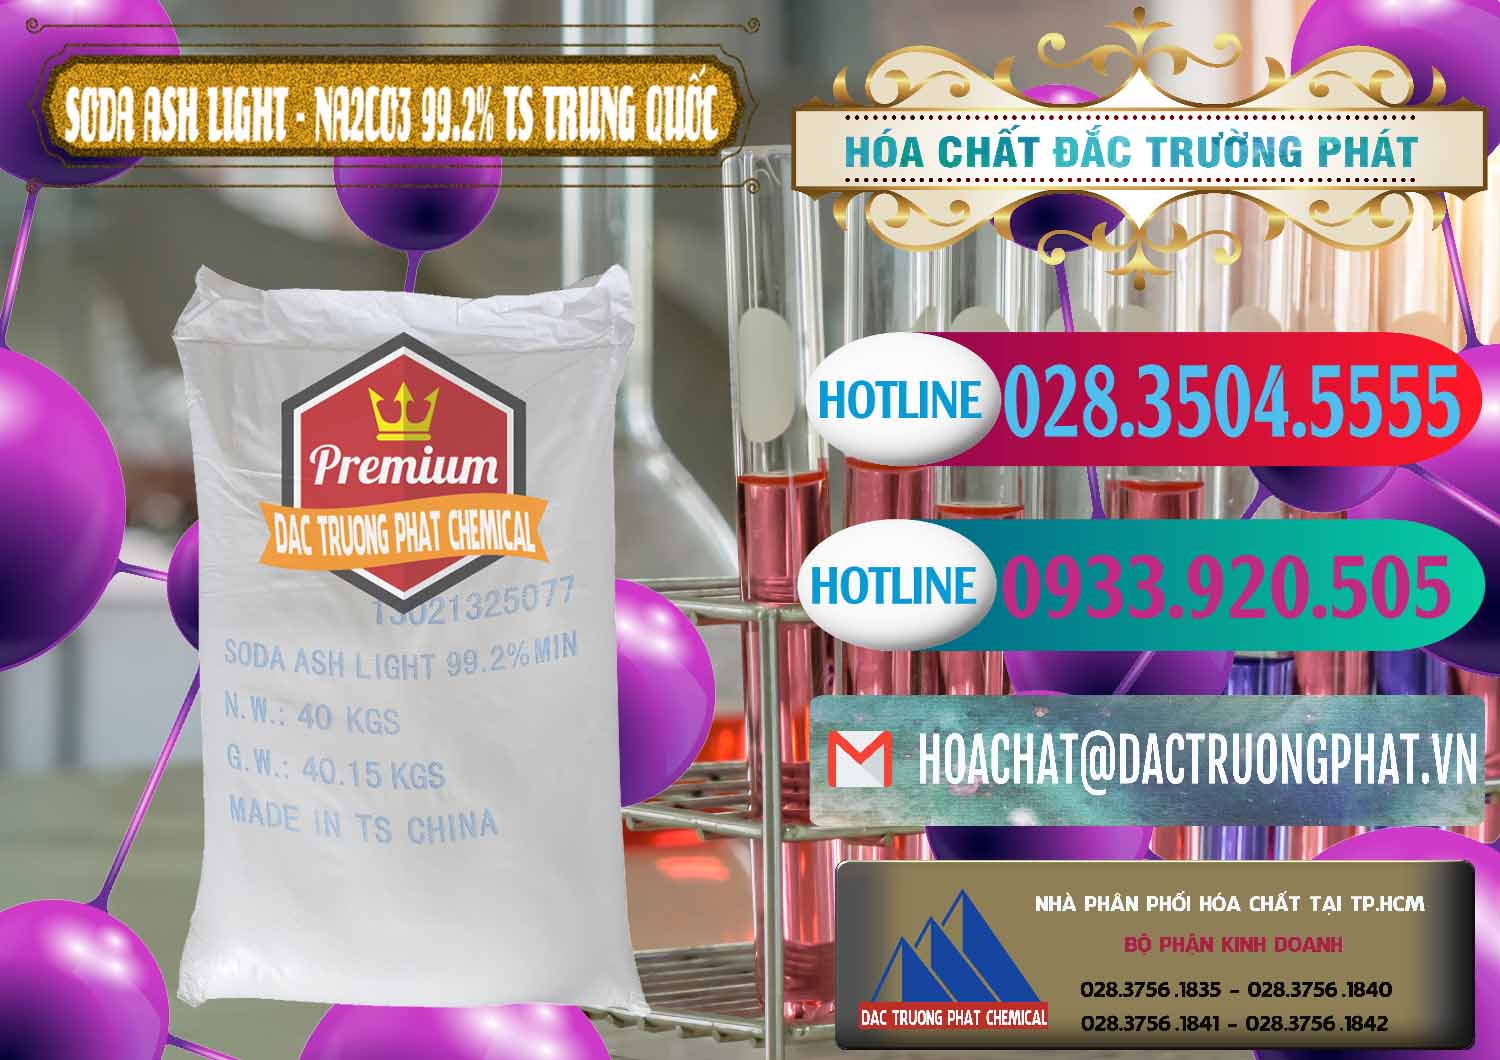 Nơi chuyên bán & cung cấp Soda Ash Light - NA2CO3 TS Trung Quốc China - 0221 - Đơn vị chuyên bán và phân phối hóa chất tại TP.HCM - truongphat.vn